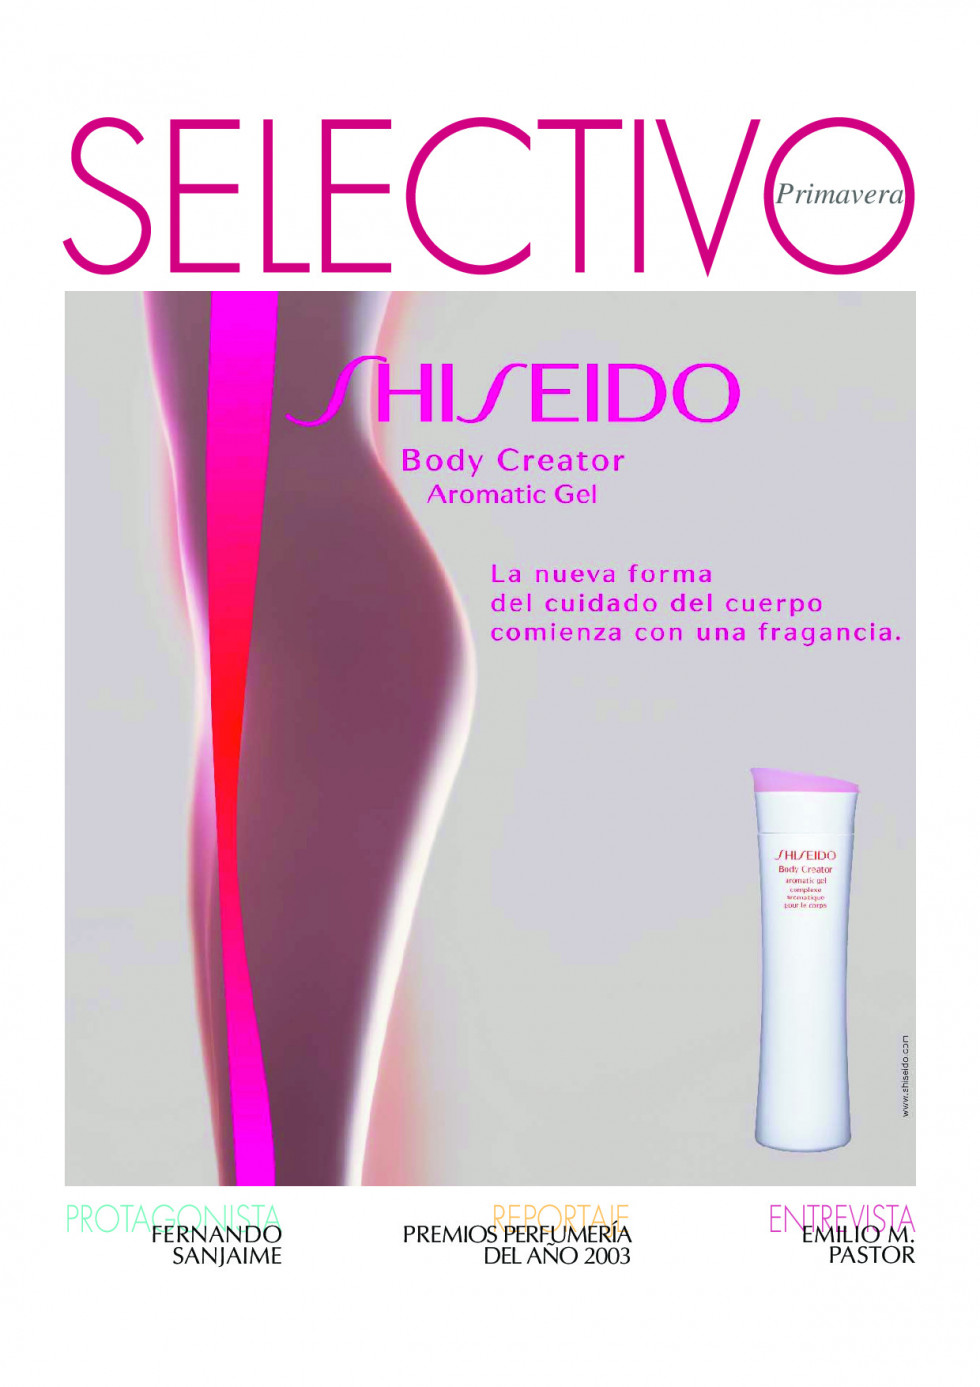 Selectivo16